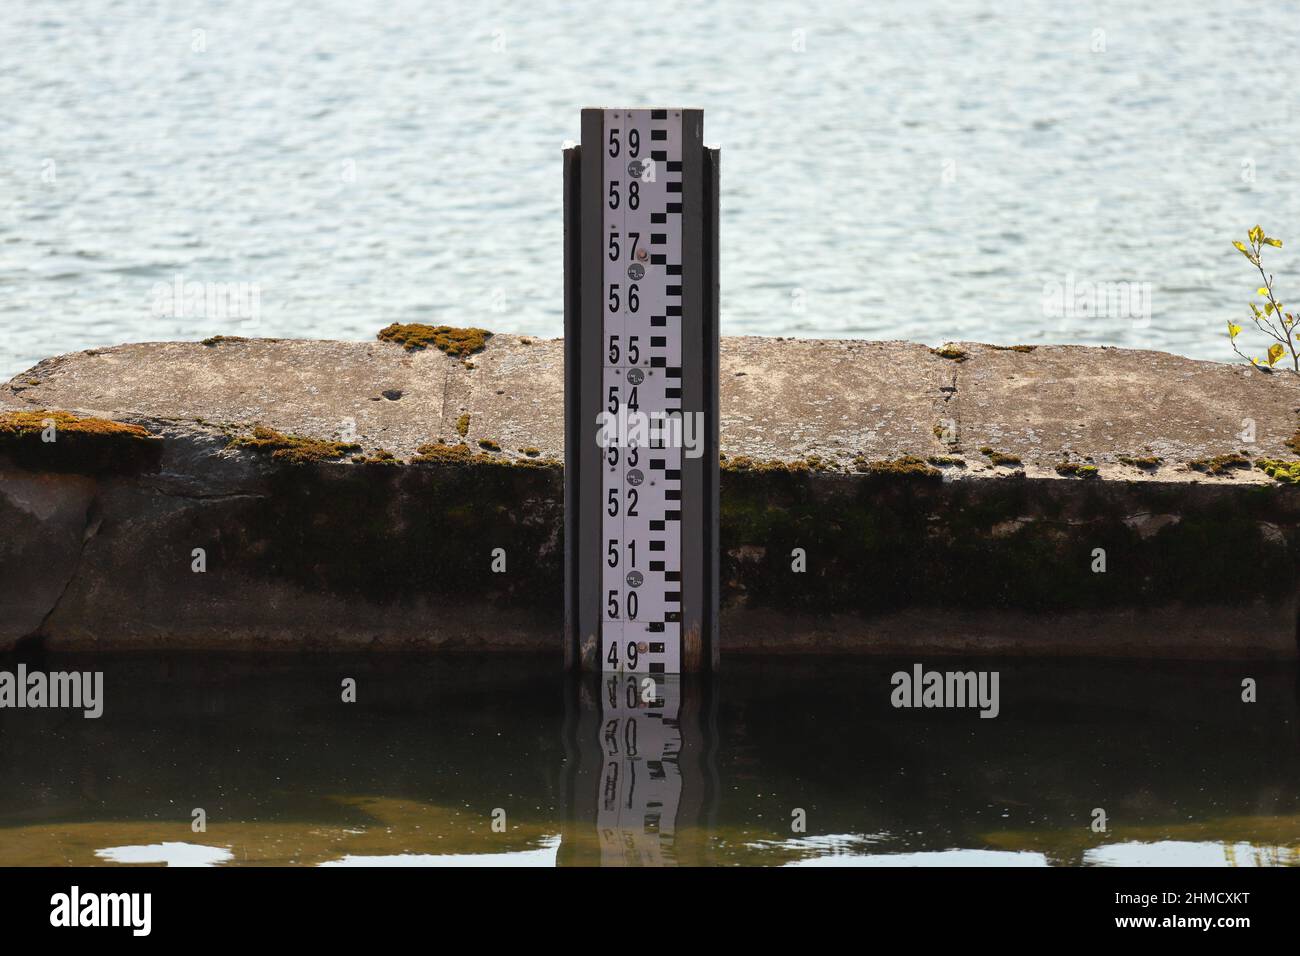 Werkzeug zur Messung der Wassertiefe am Seeufer.Beobachtung der Wasserstufe zur Verhinderung von Überschwemmungen und Katastrophen Stockfoto